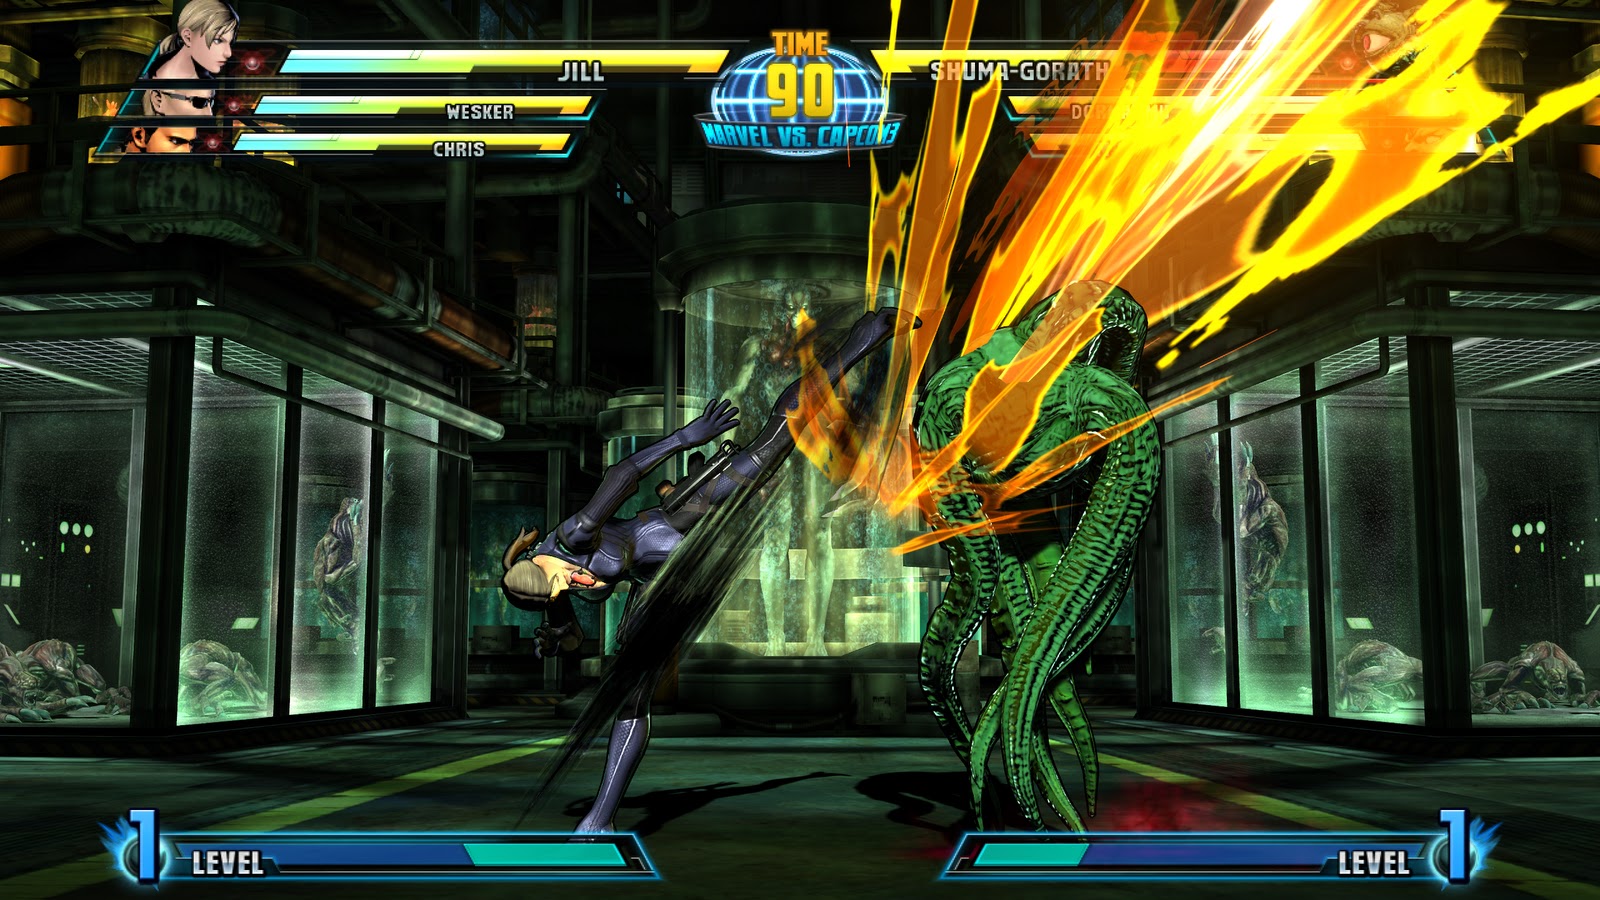 Marvel vs Capcom 3: Jill and Shuma Gorath Screenshots.